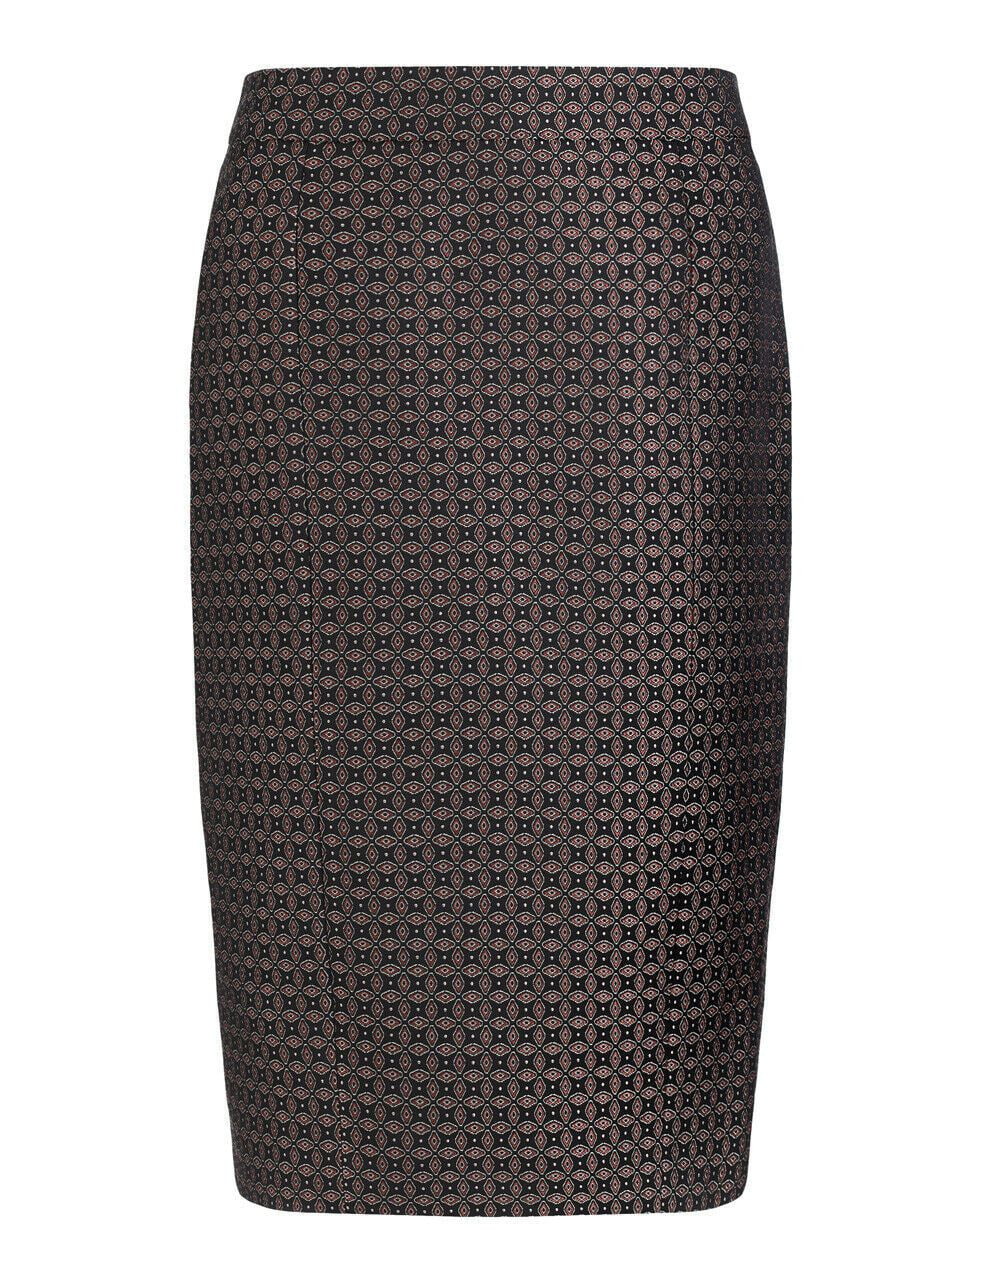 JOSEPH Cravat Jacquard Black Burgundy Pencil Skirt UK 8 BNWT RRP £170 Timeless Fashions